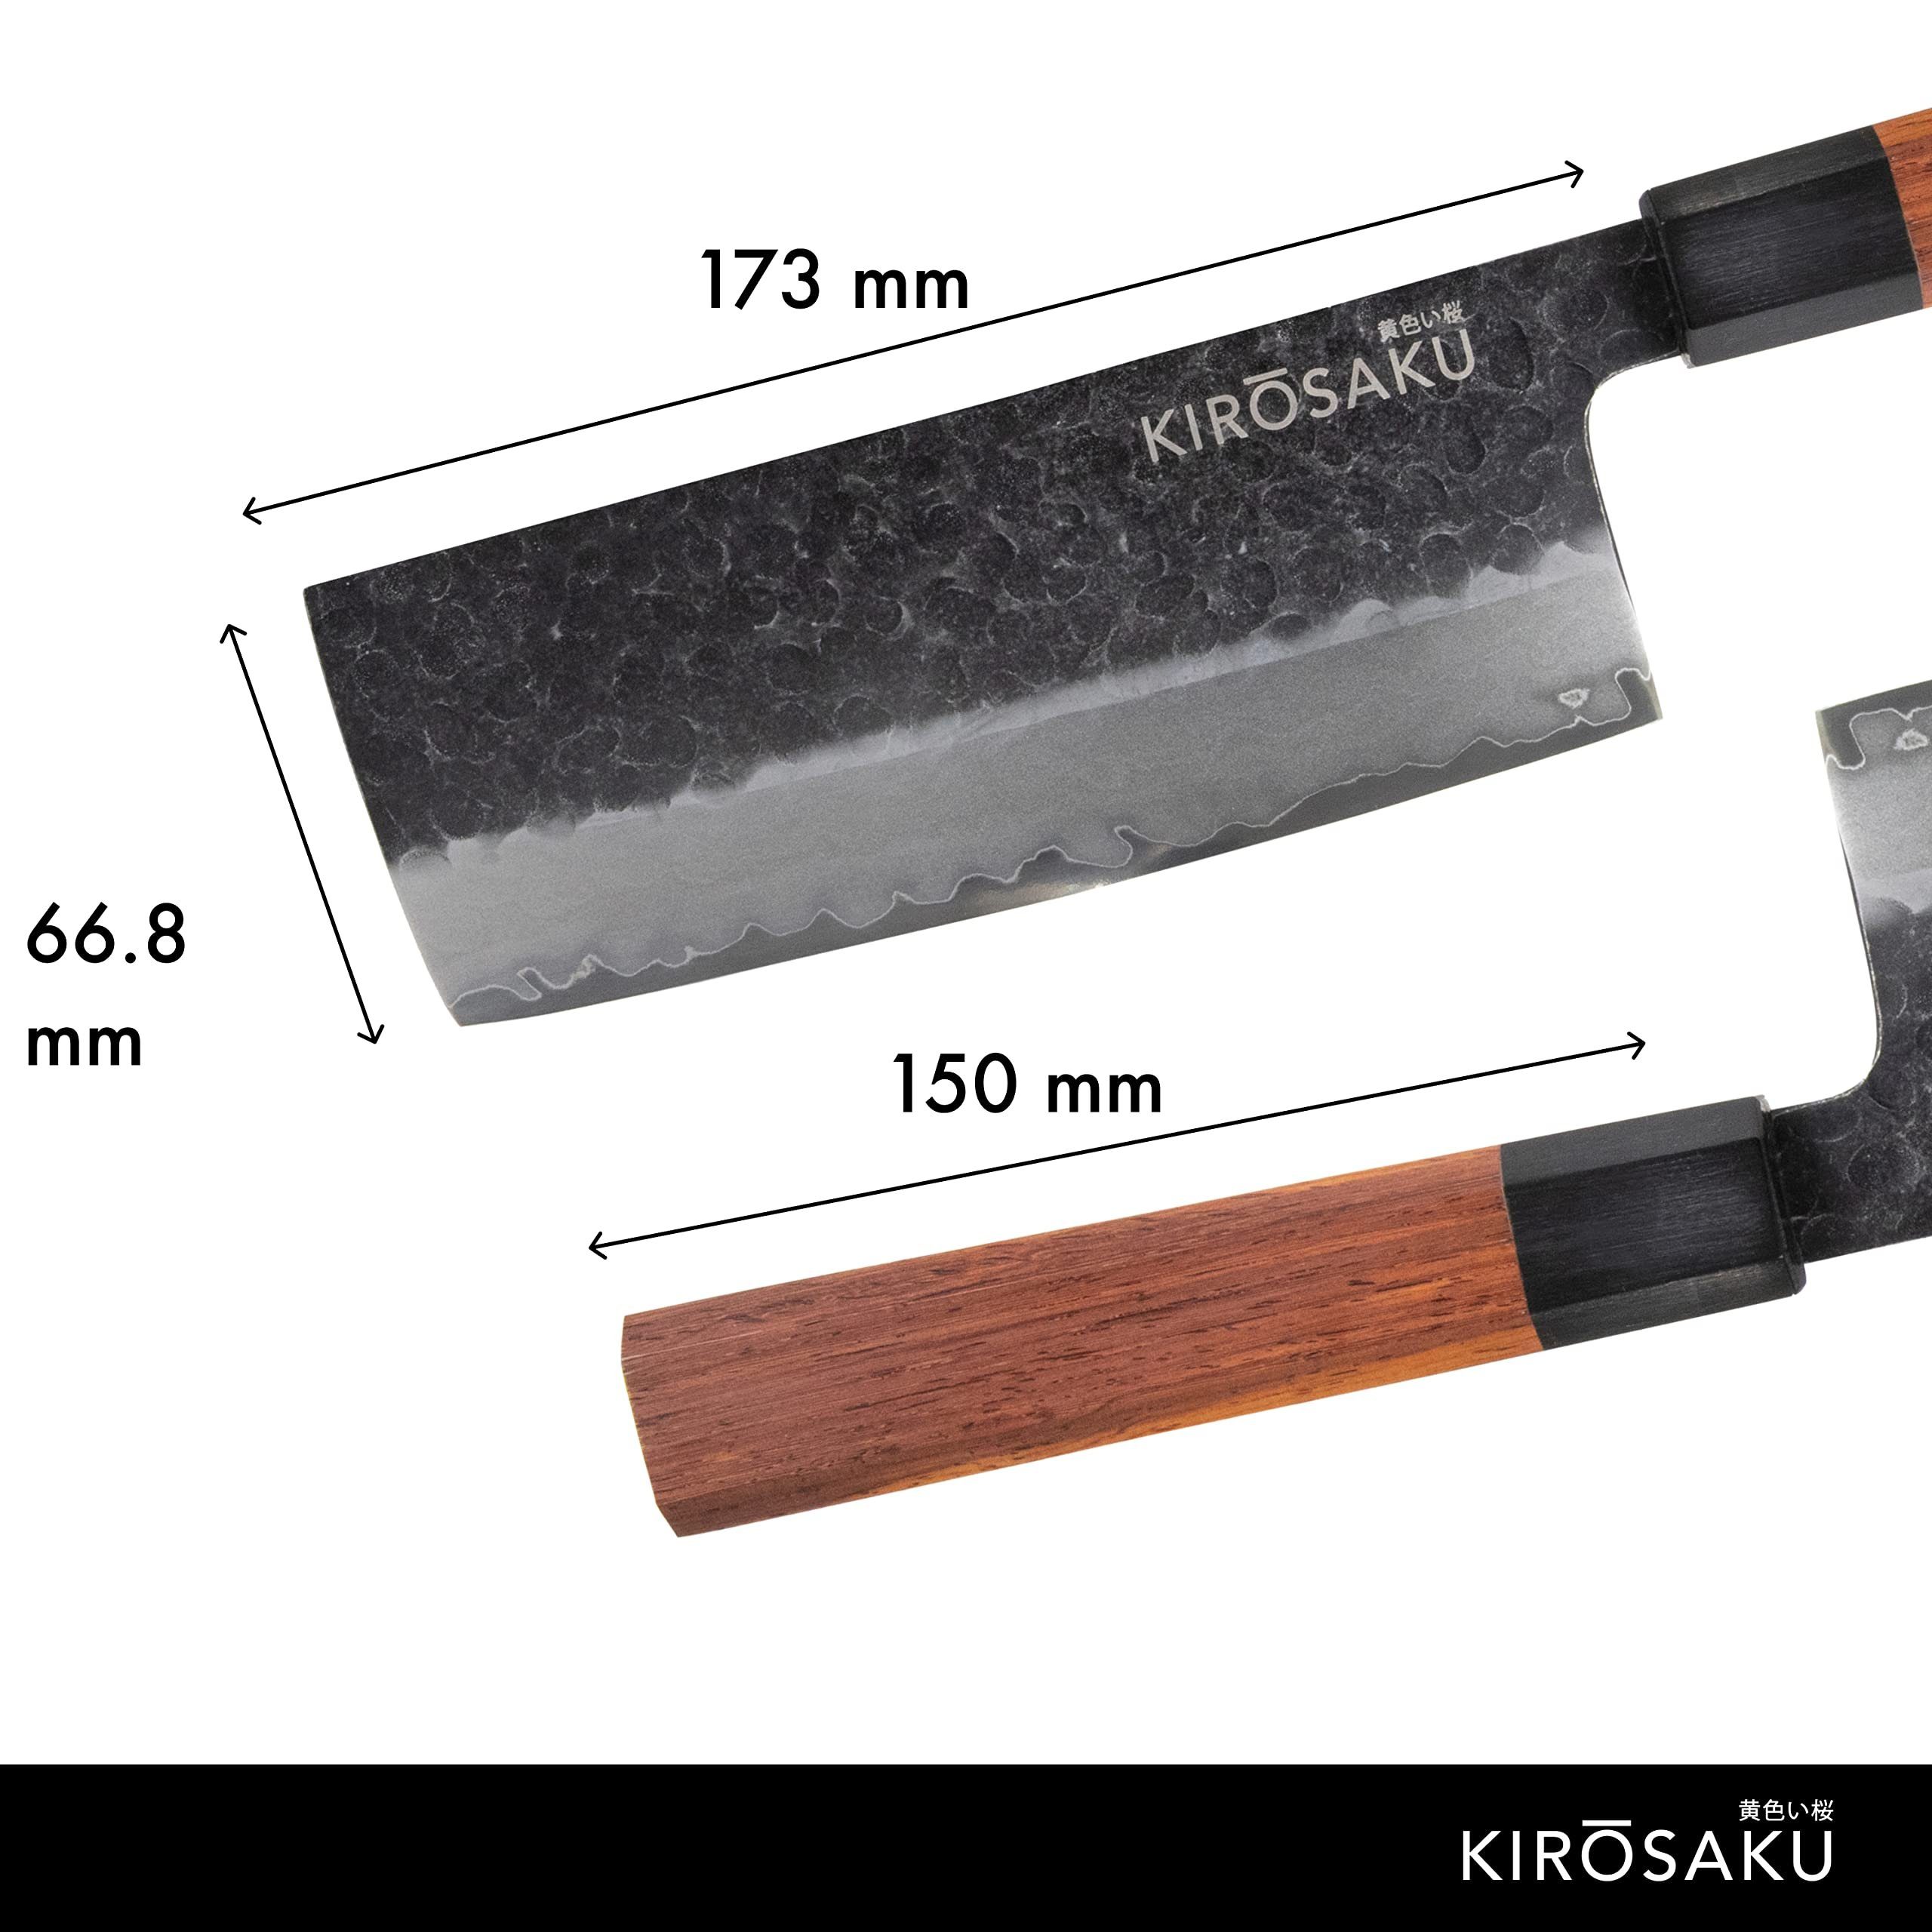 Kirosaku Asiamesser Japanisches Messerset 32cm - Cm Holzgriff, Ii. 17 Stahl & Hellbraun 3-lagiger